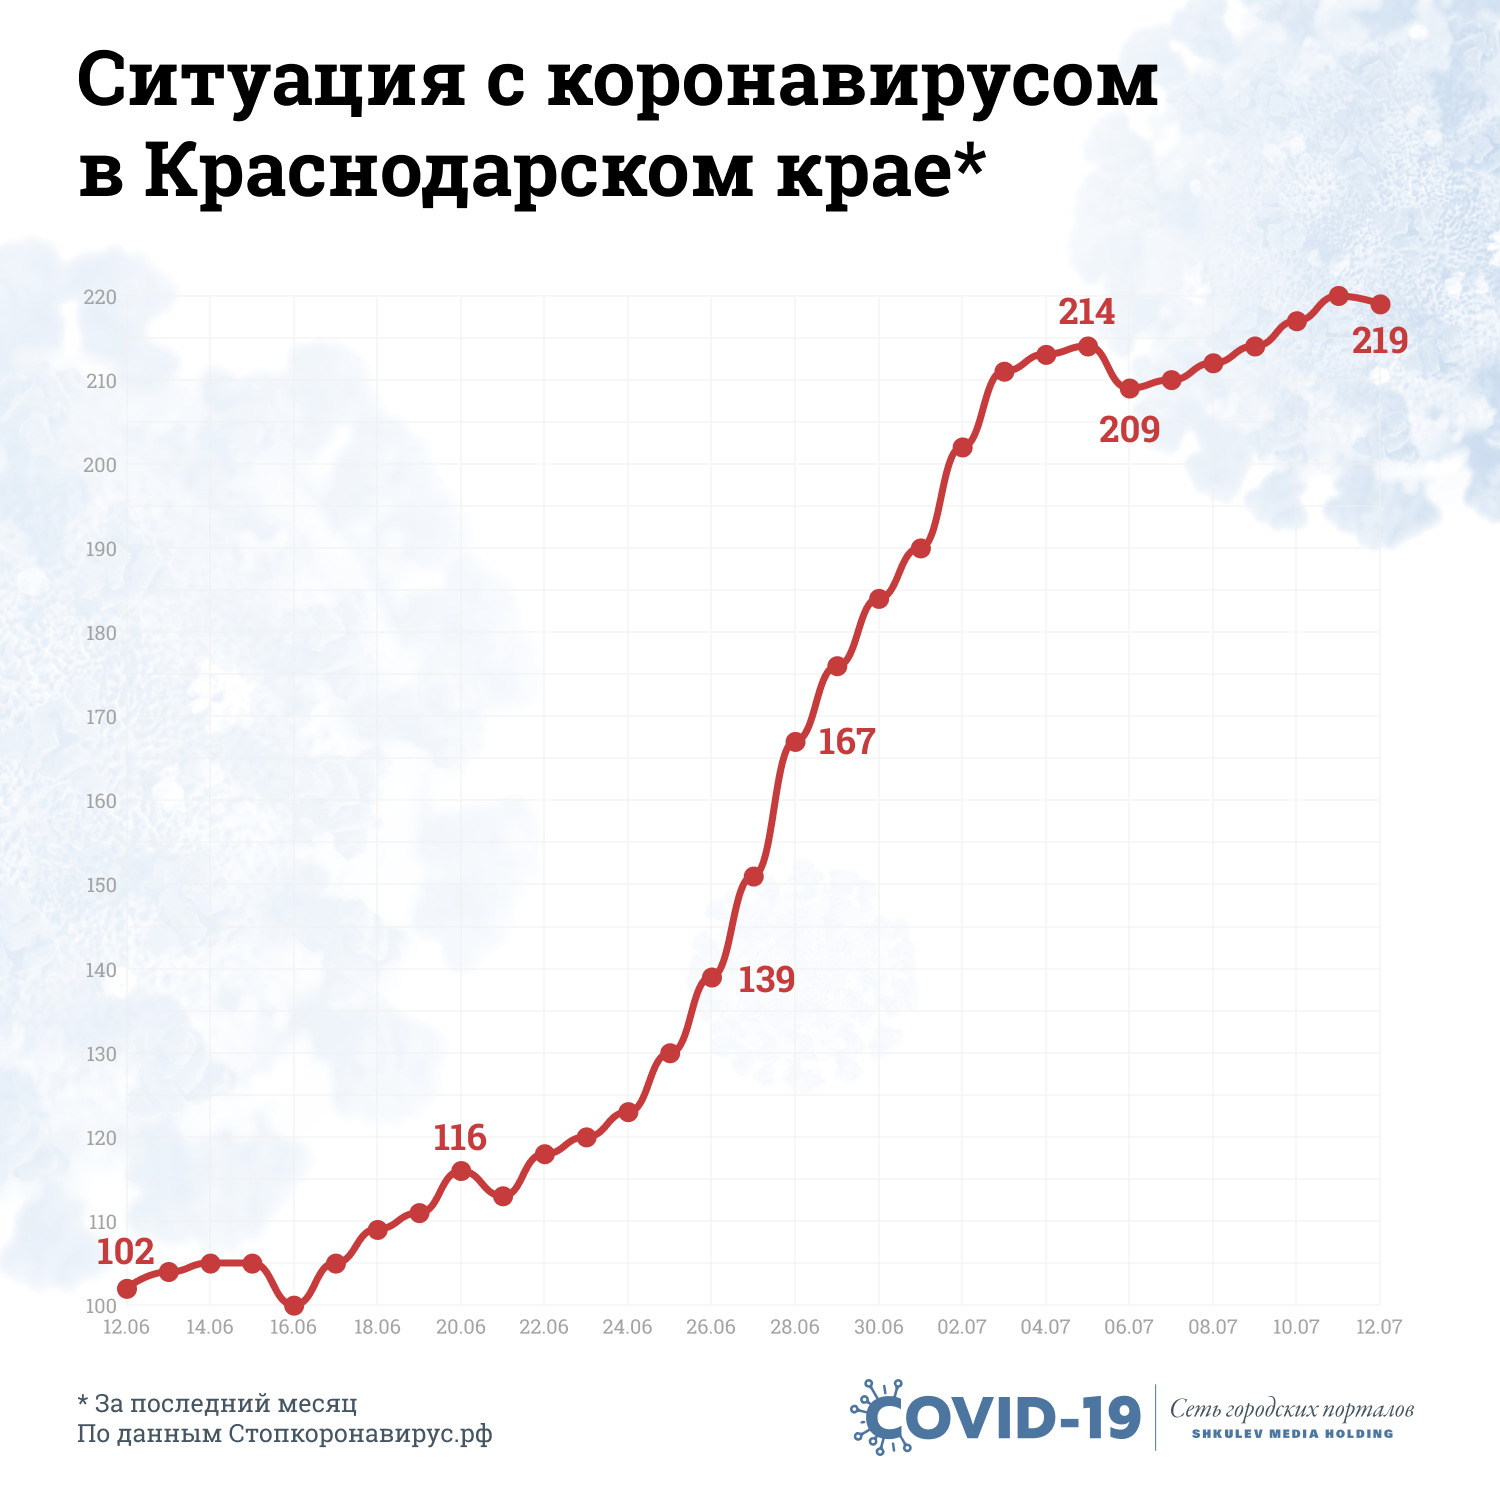 С конца июня в Краснодарском крае начался резкий рост заболеваемости коронавирусом